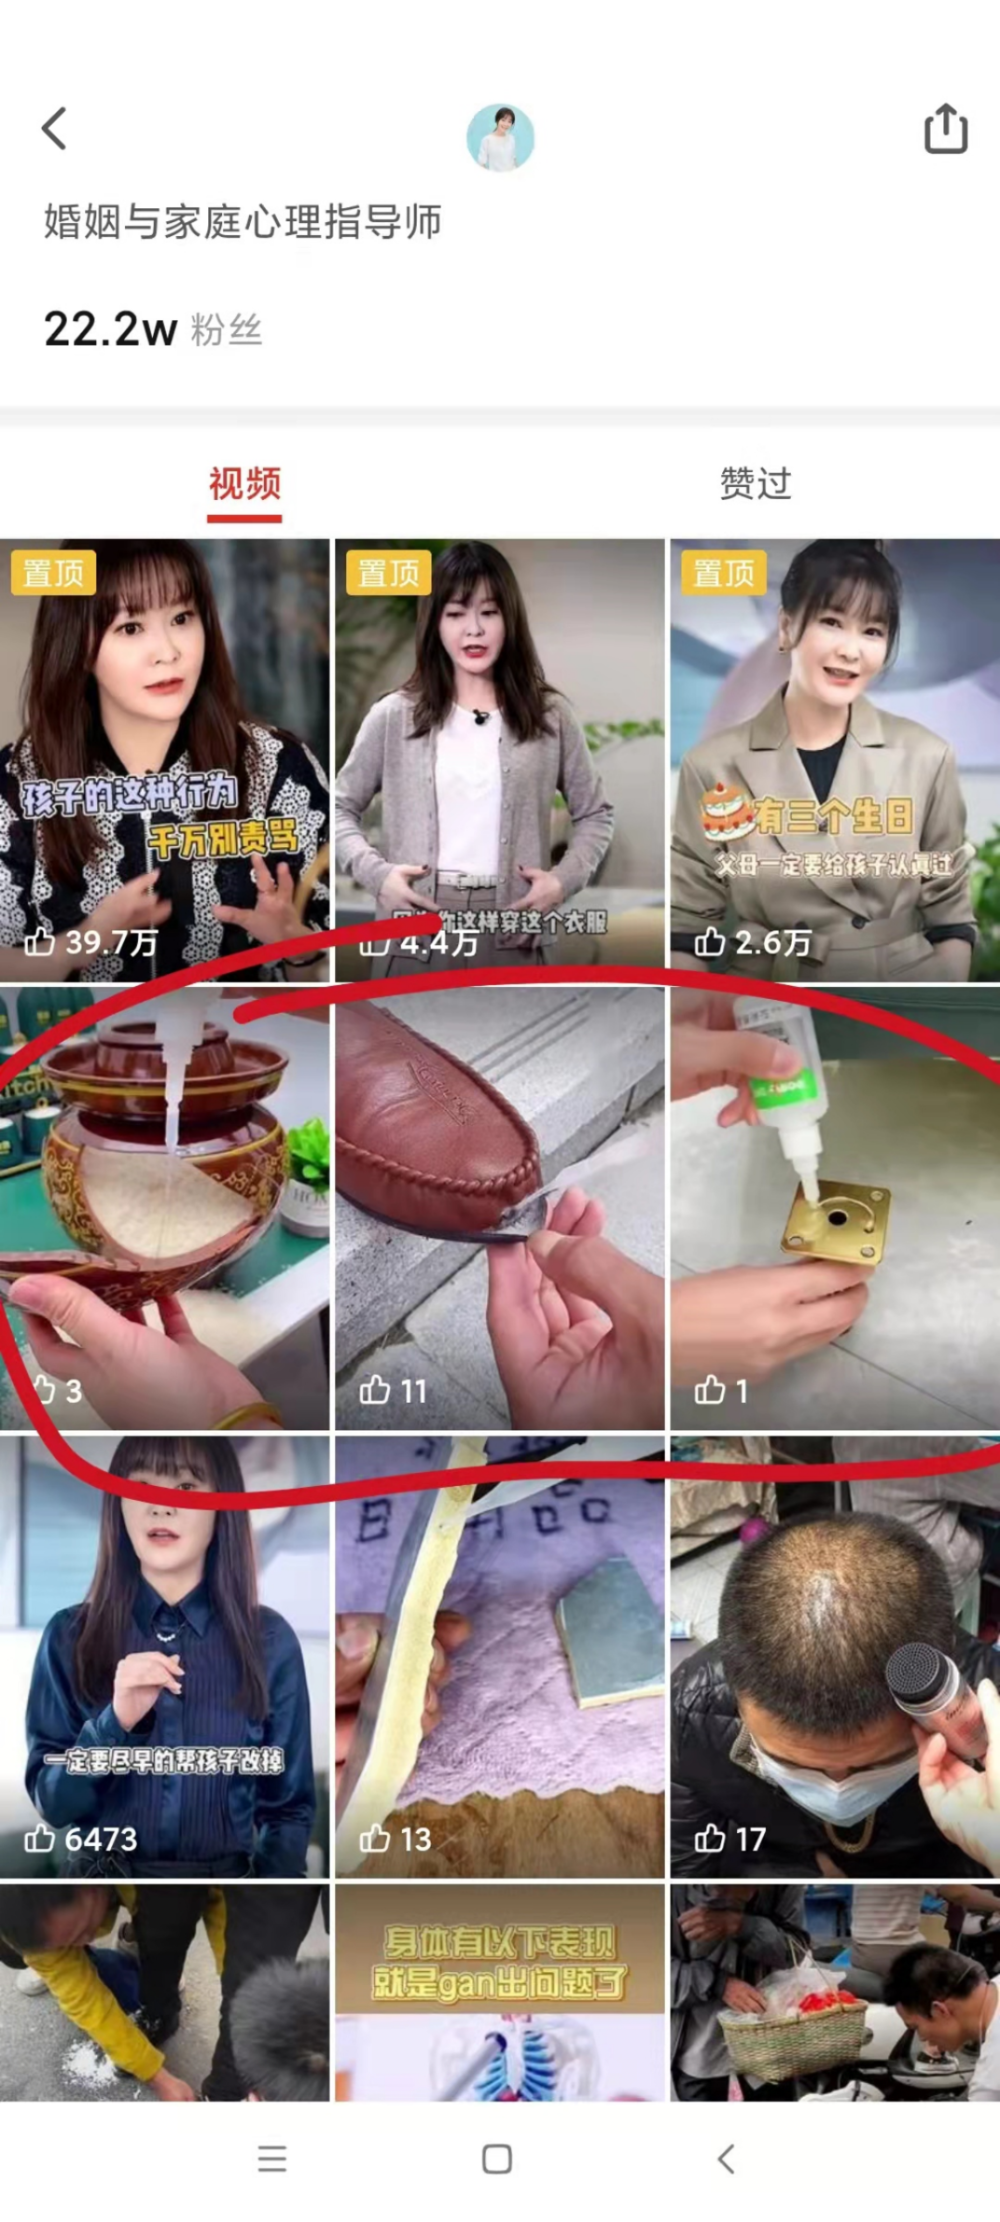 多多视频王小骞的账号里穿插的带货广告